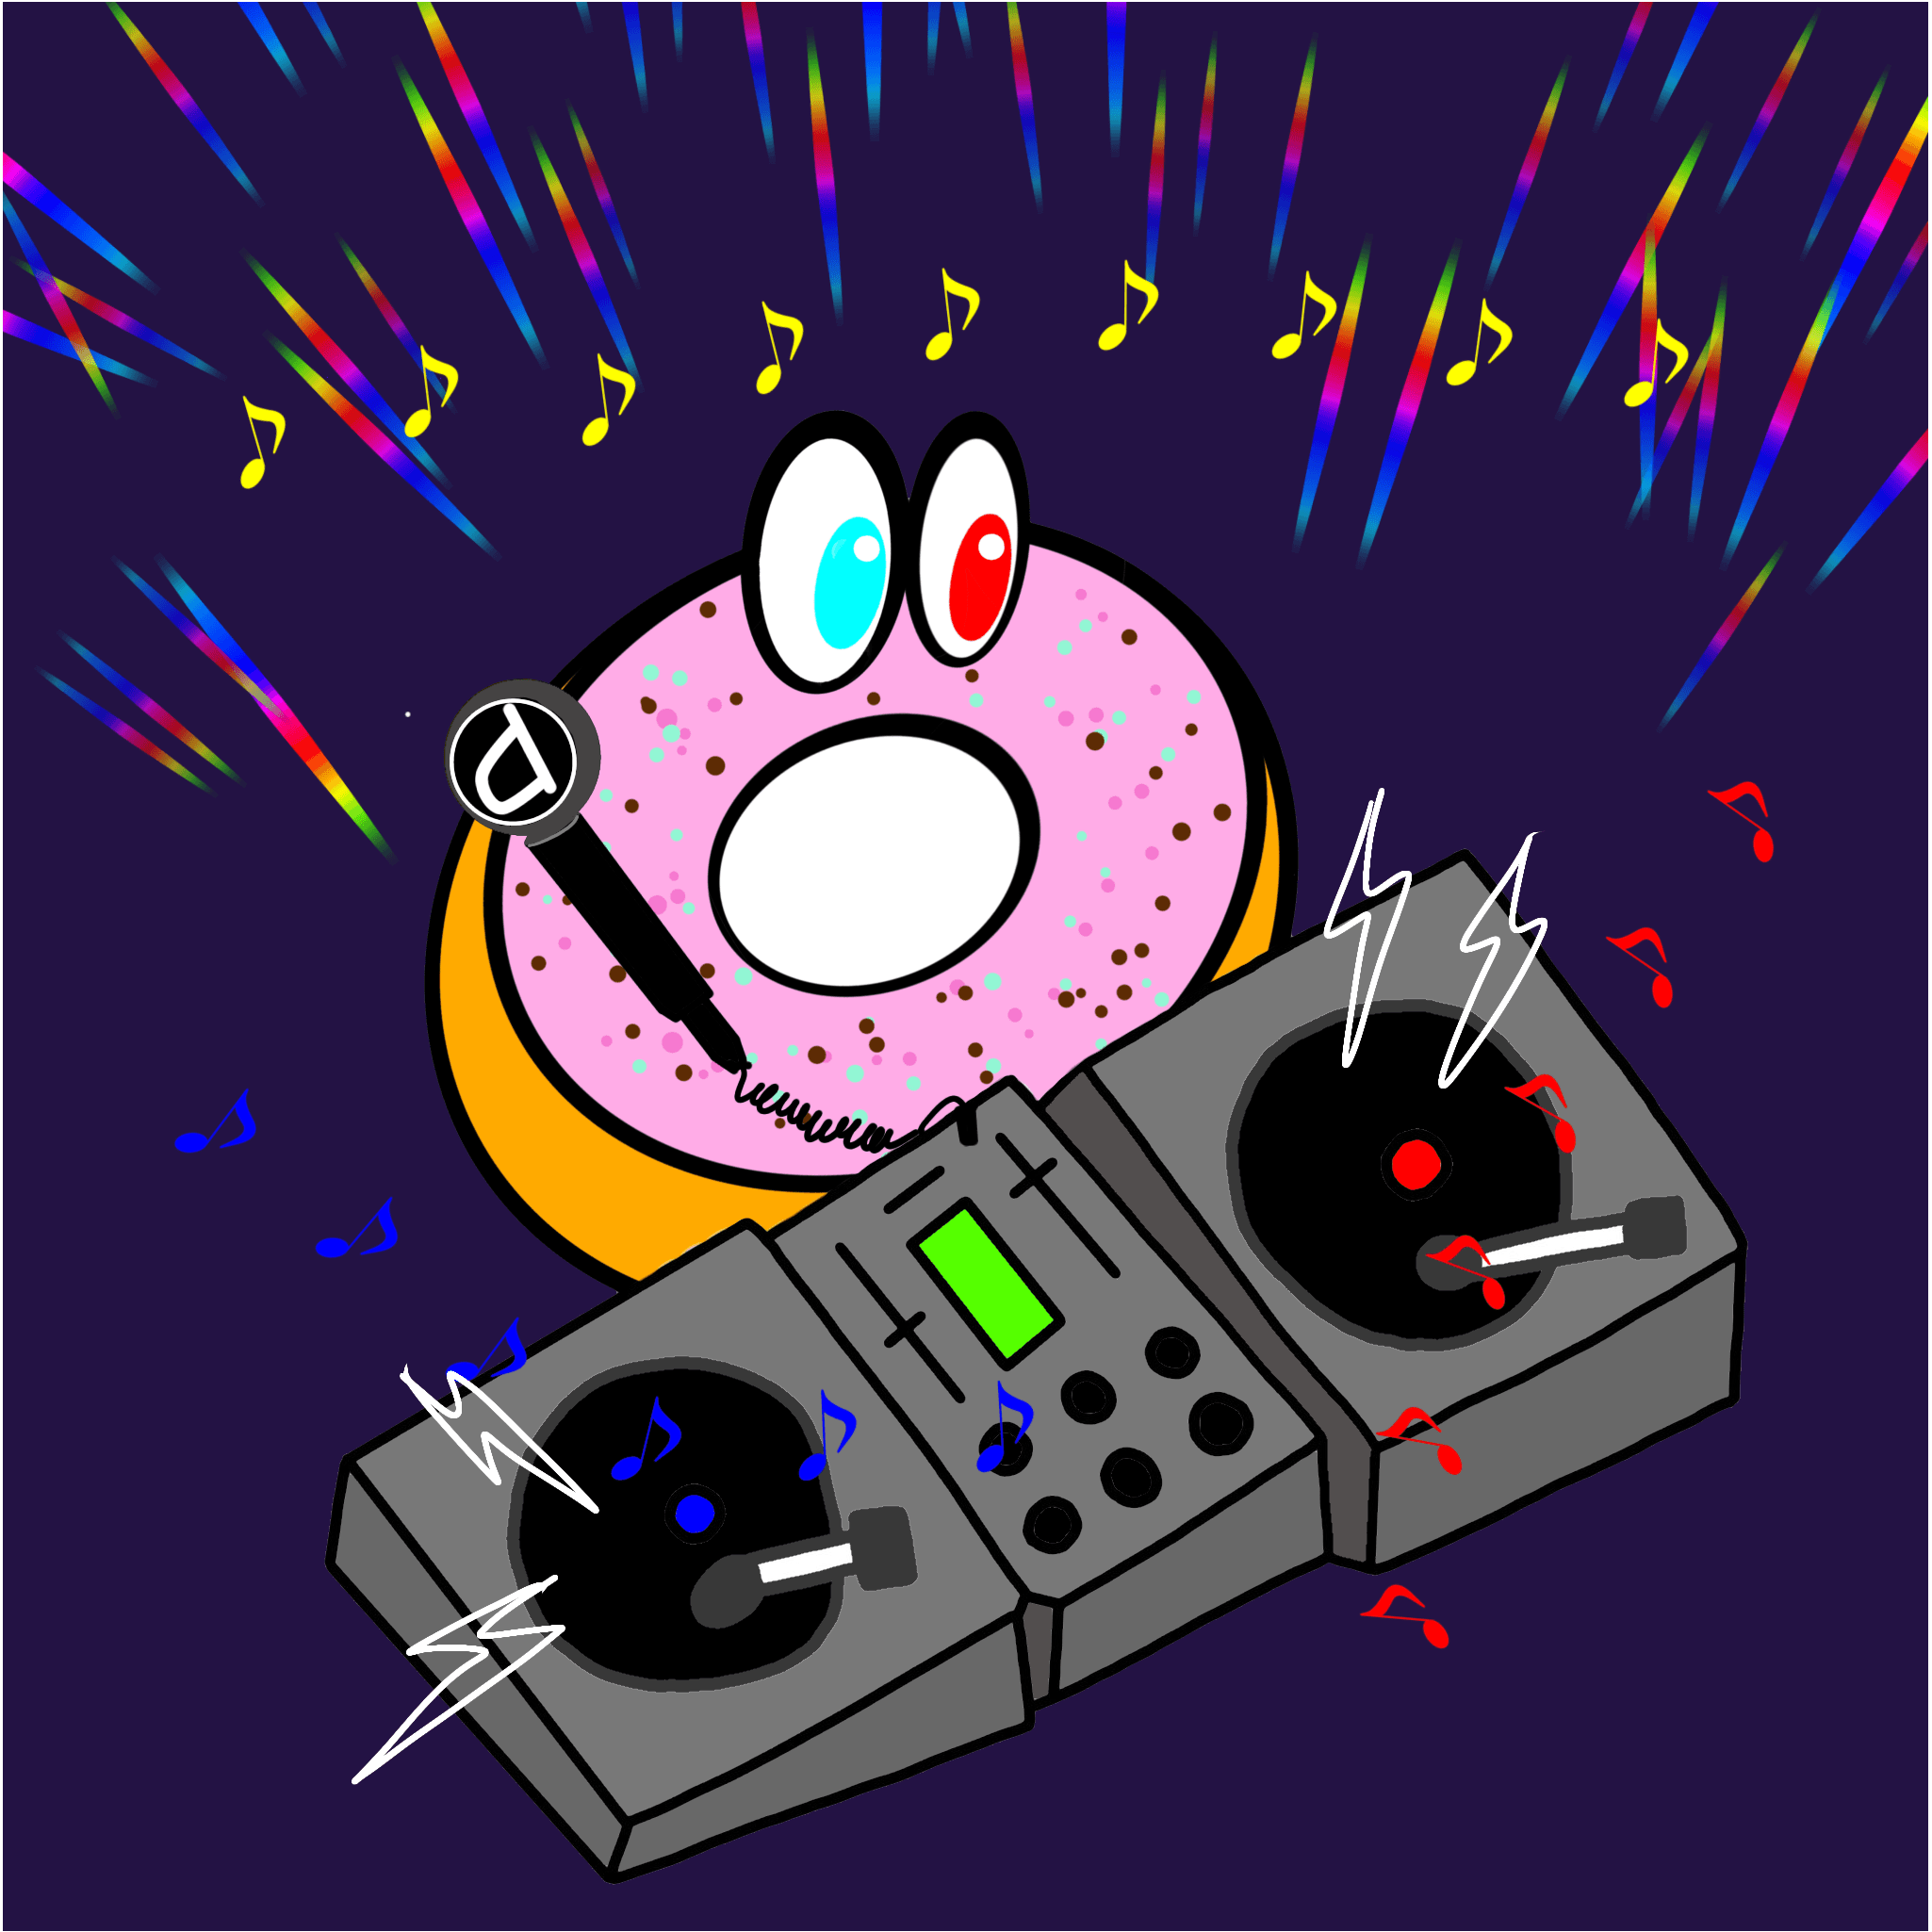 Mintin' Donuts x DJ Animals